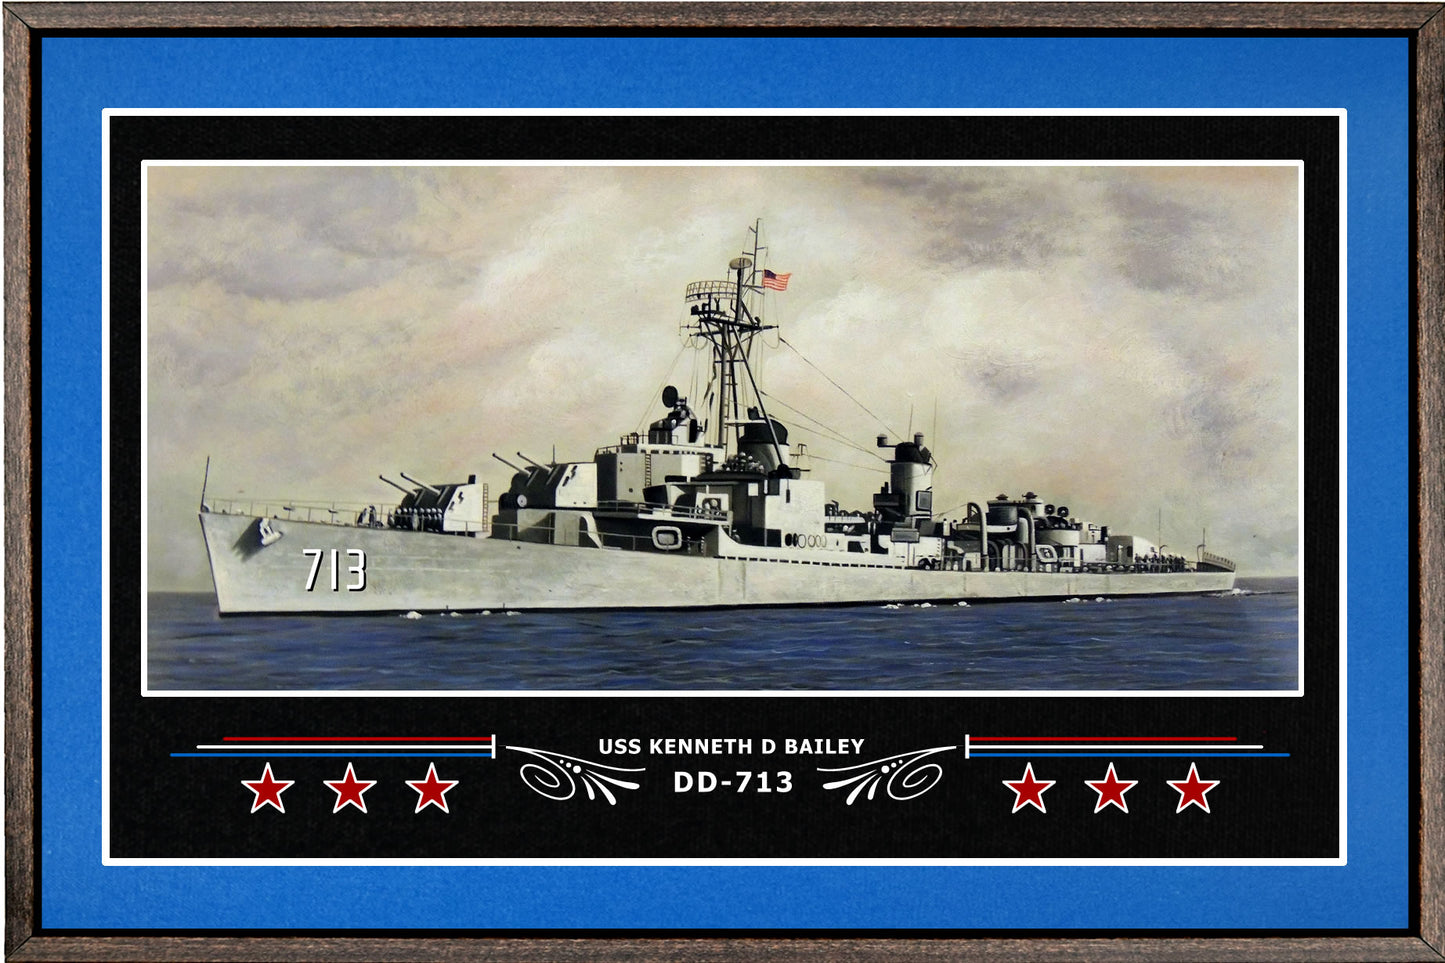 USS KENNETH D BAILEY DD 713 BOX FRAMED CANVAS ART BLUE